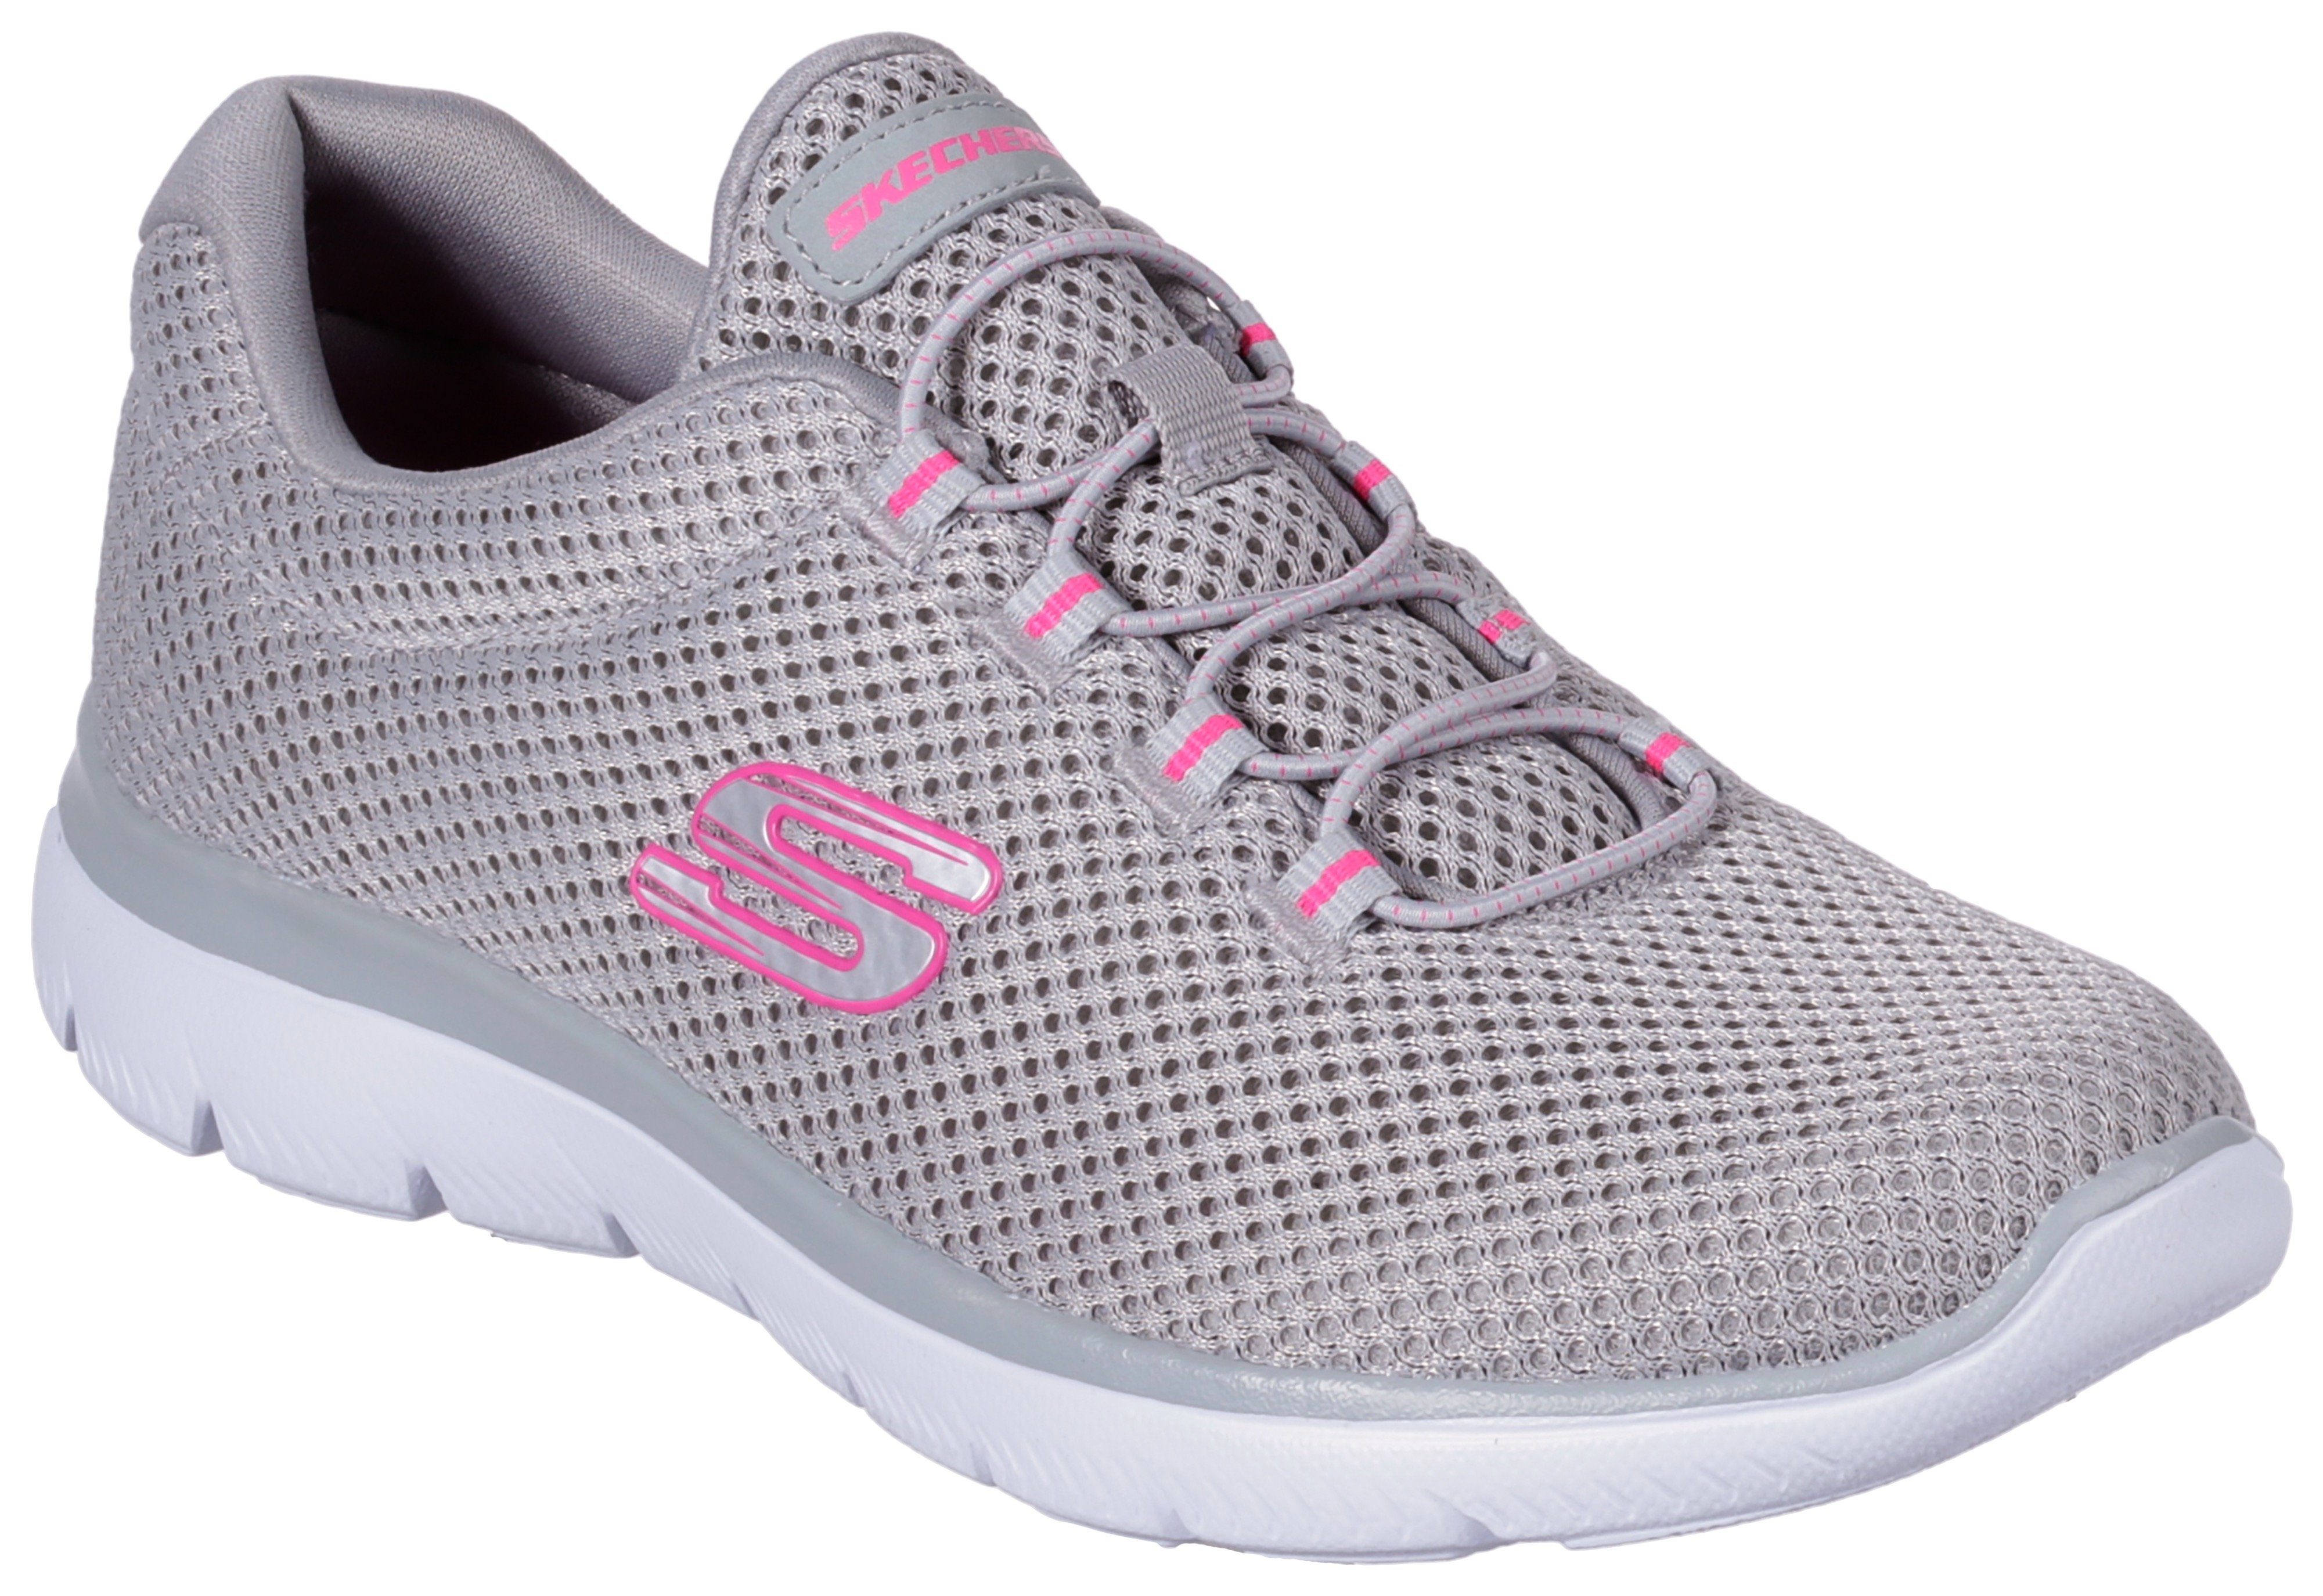 mit Slip-On Innensohle SUMMITS Sneaker Skechers grau-pink komfortabler